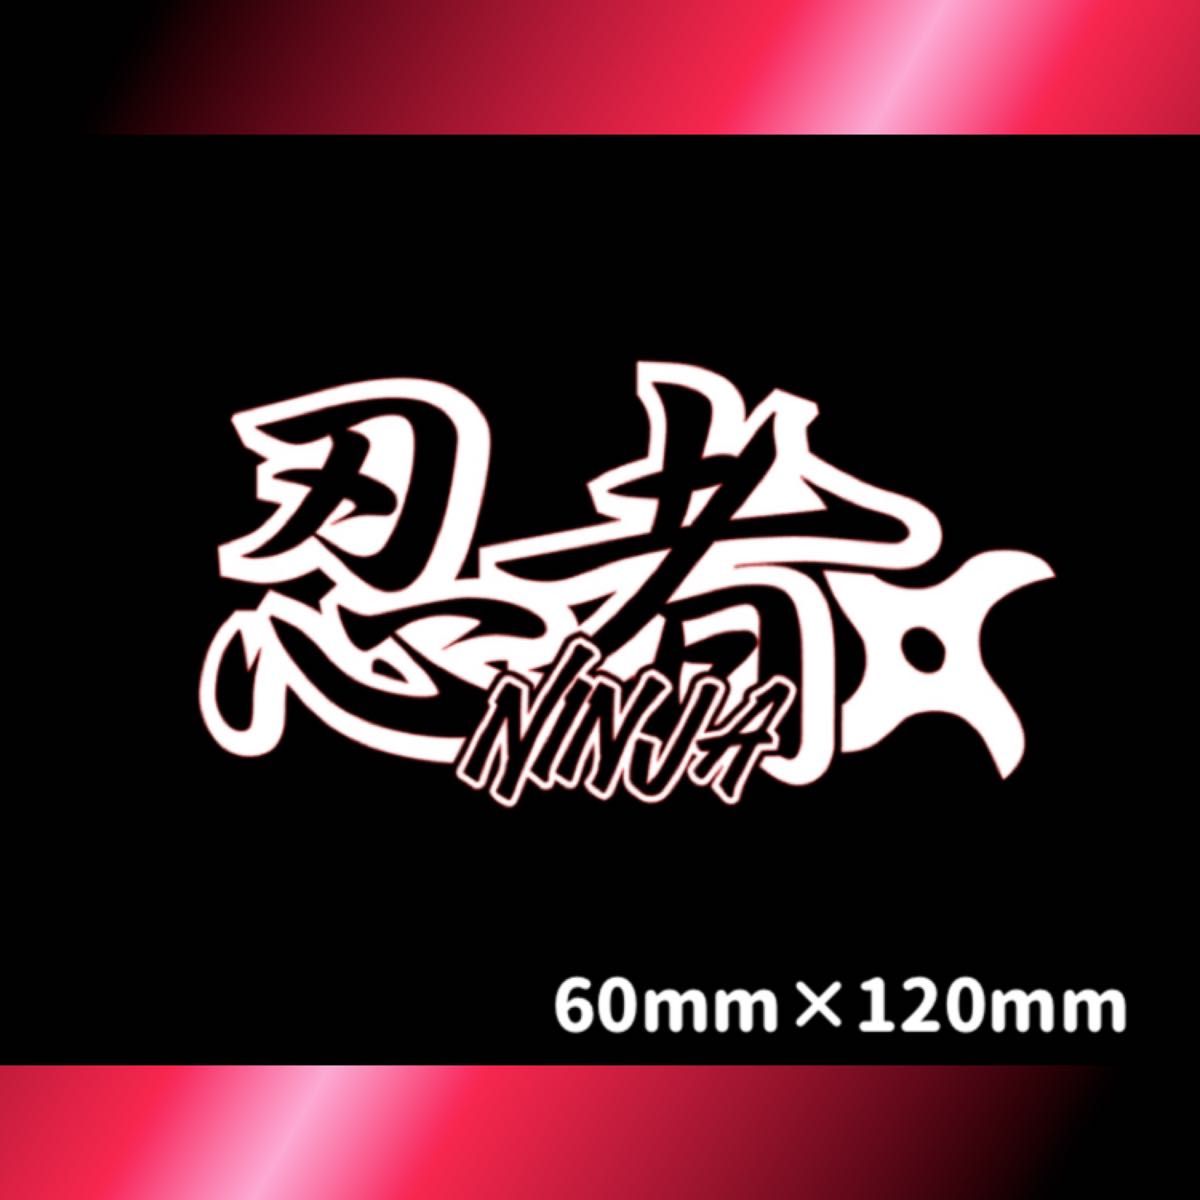 【ヘルメット・バイク】ニンジャ ninja 忍者 エンブレム ステッカー シール デカール カス取り・転写シート施工済 2枚セット